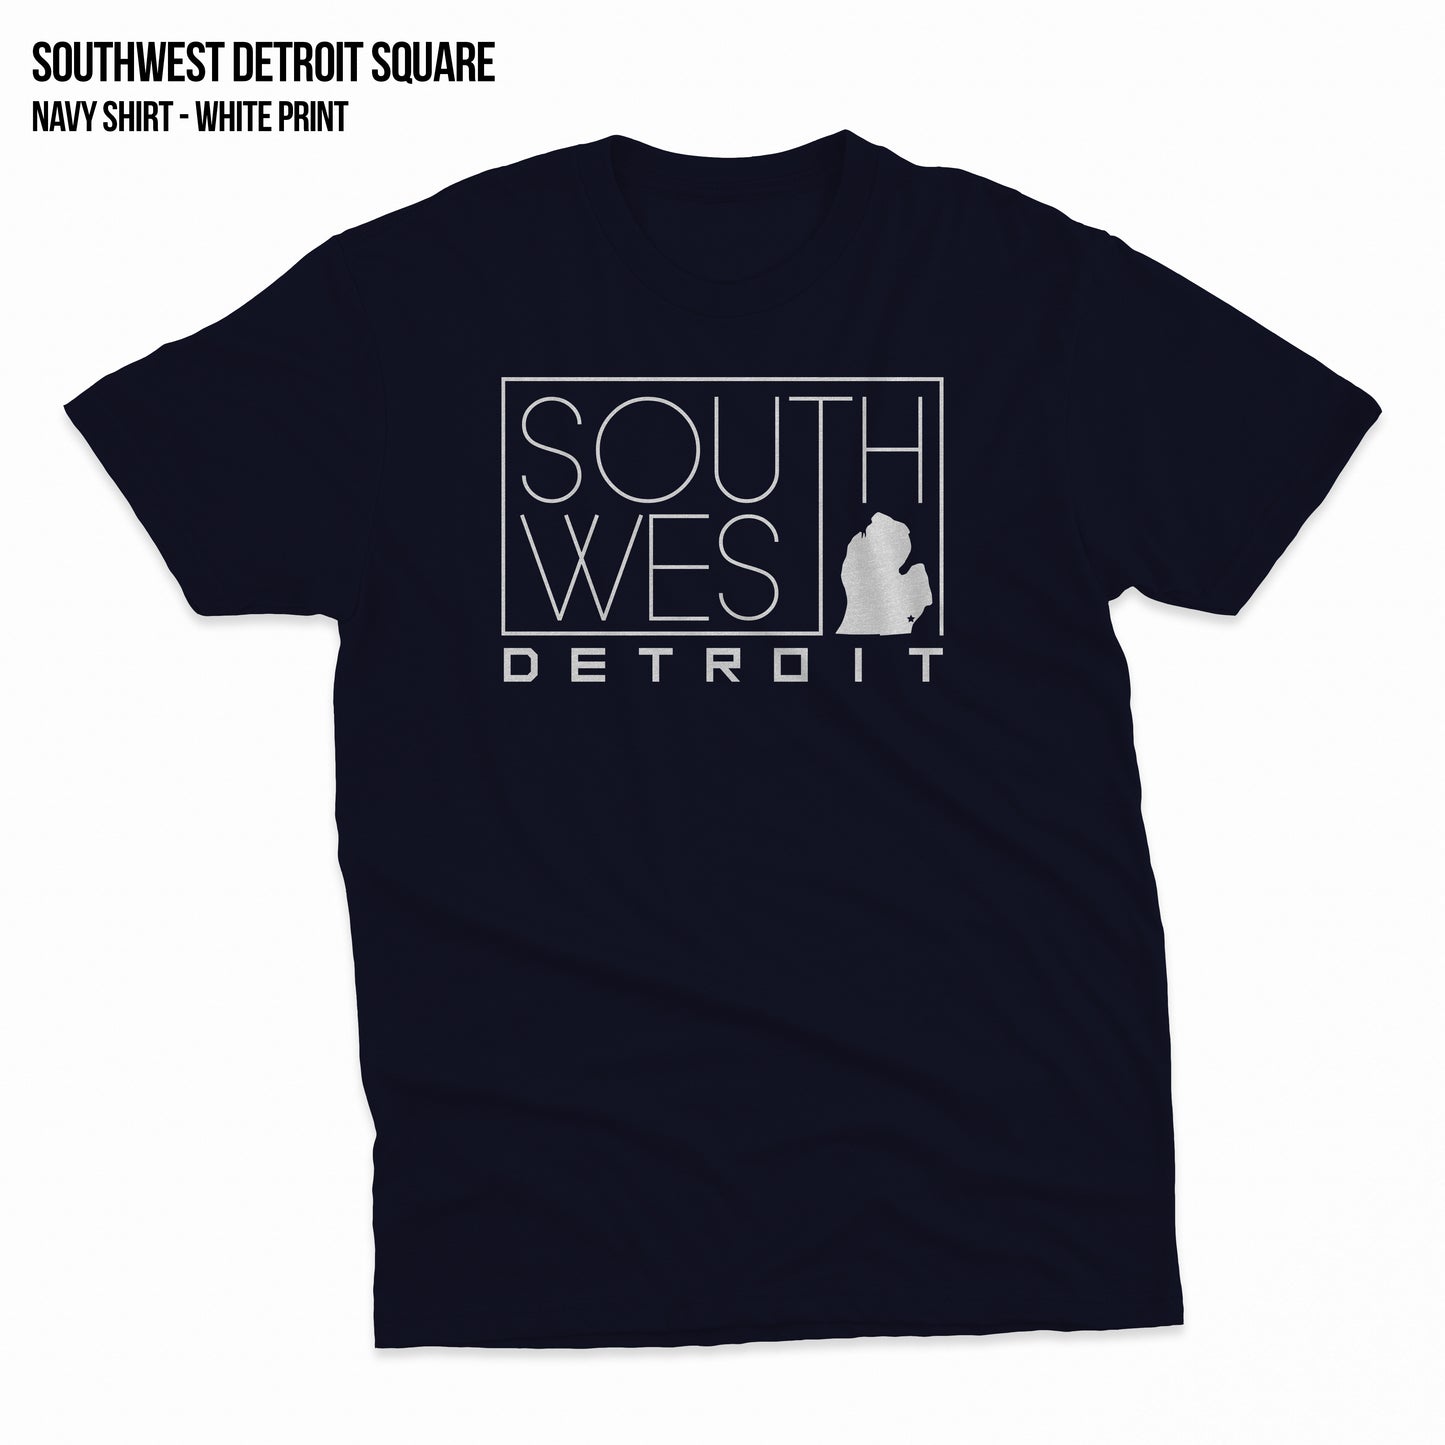 Southwest Detroit Square